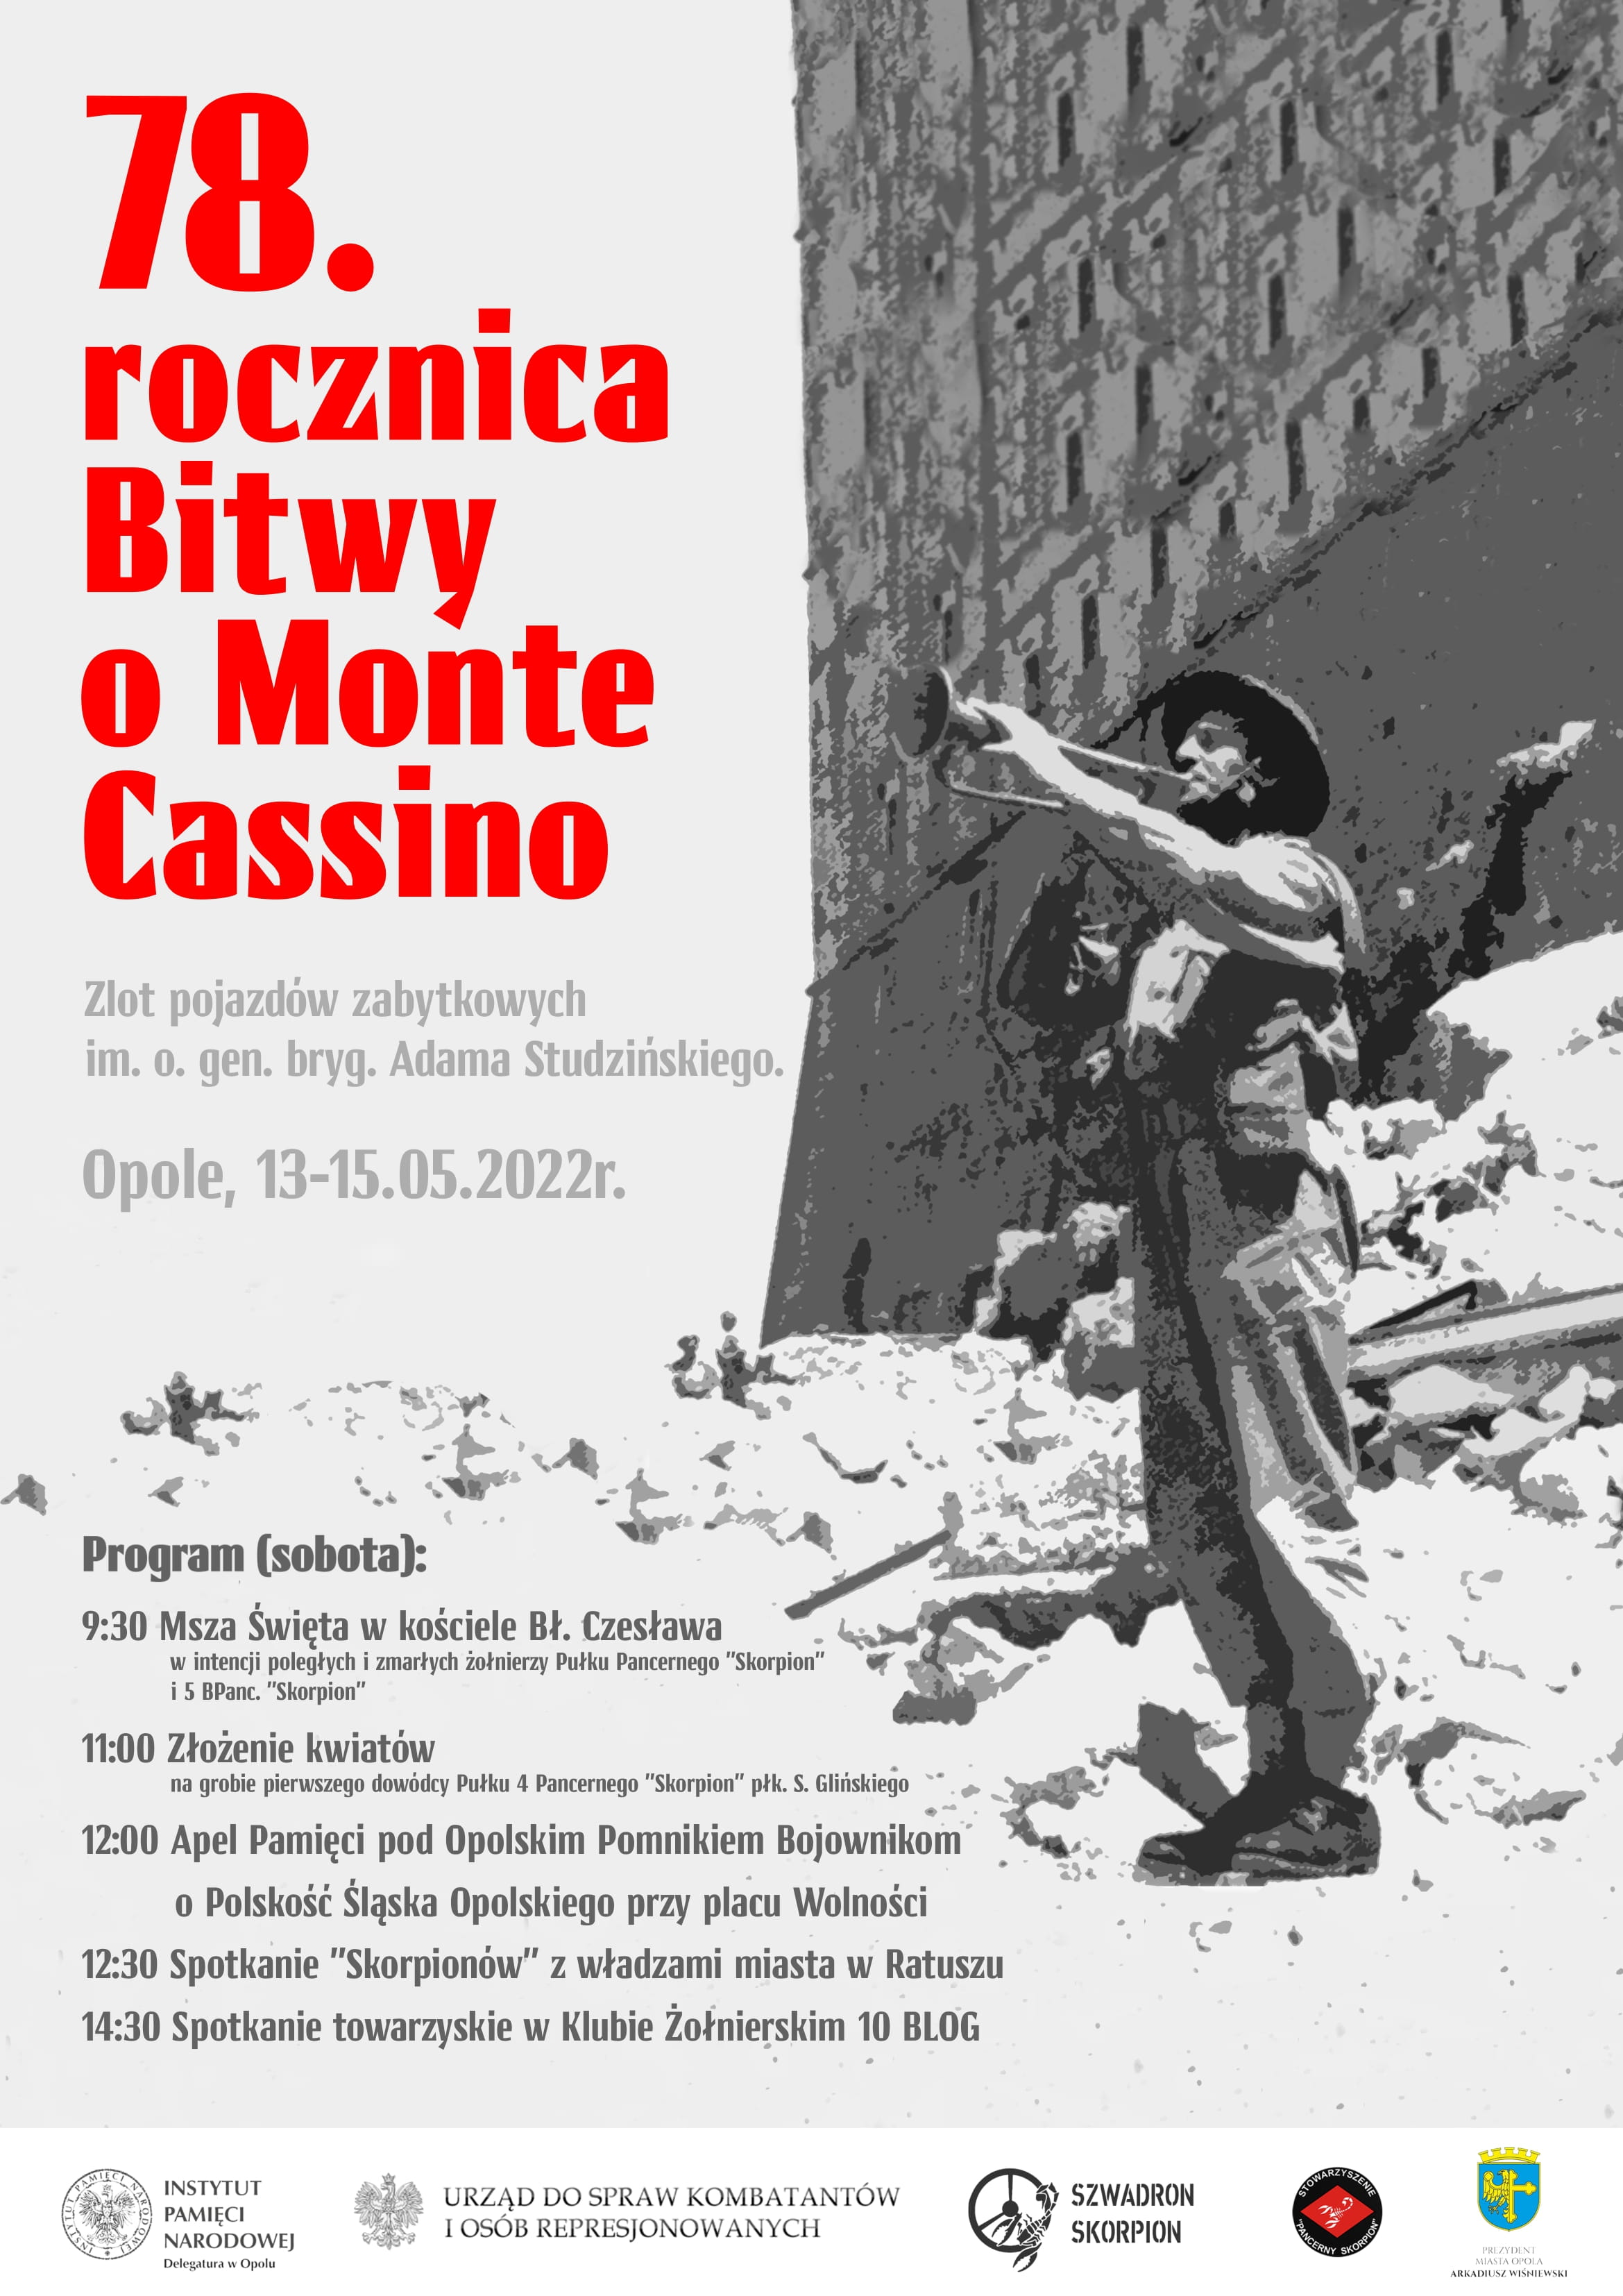 Zapraszamy na obchody 78. rocznicy bitwy o Monte Cassino i Święto Stowarzyszenia „Pancerny Skorpion” w dn. 14.05.2022 w Opolu